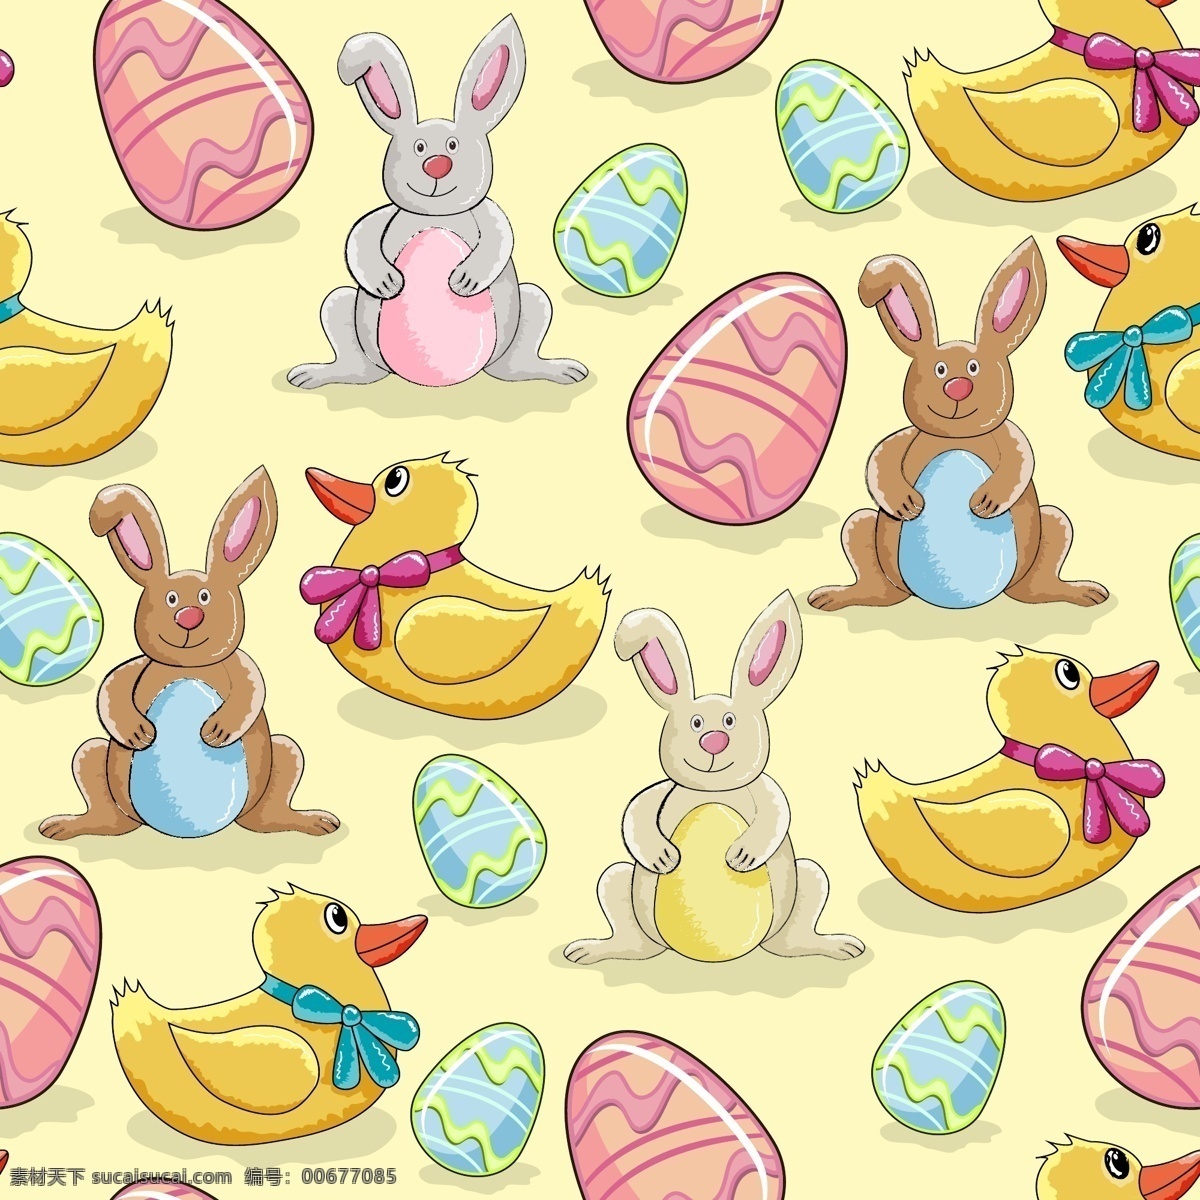 卡通 插画 矢量 蛋 复活节 鸡蛋 贴纸 小兔子 鸭 illustrator 矢量图 矢量人物